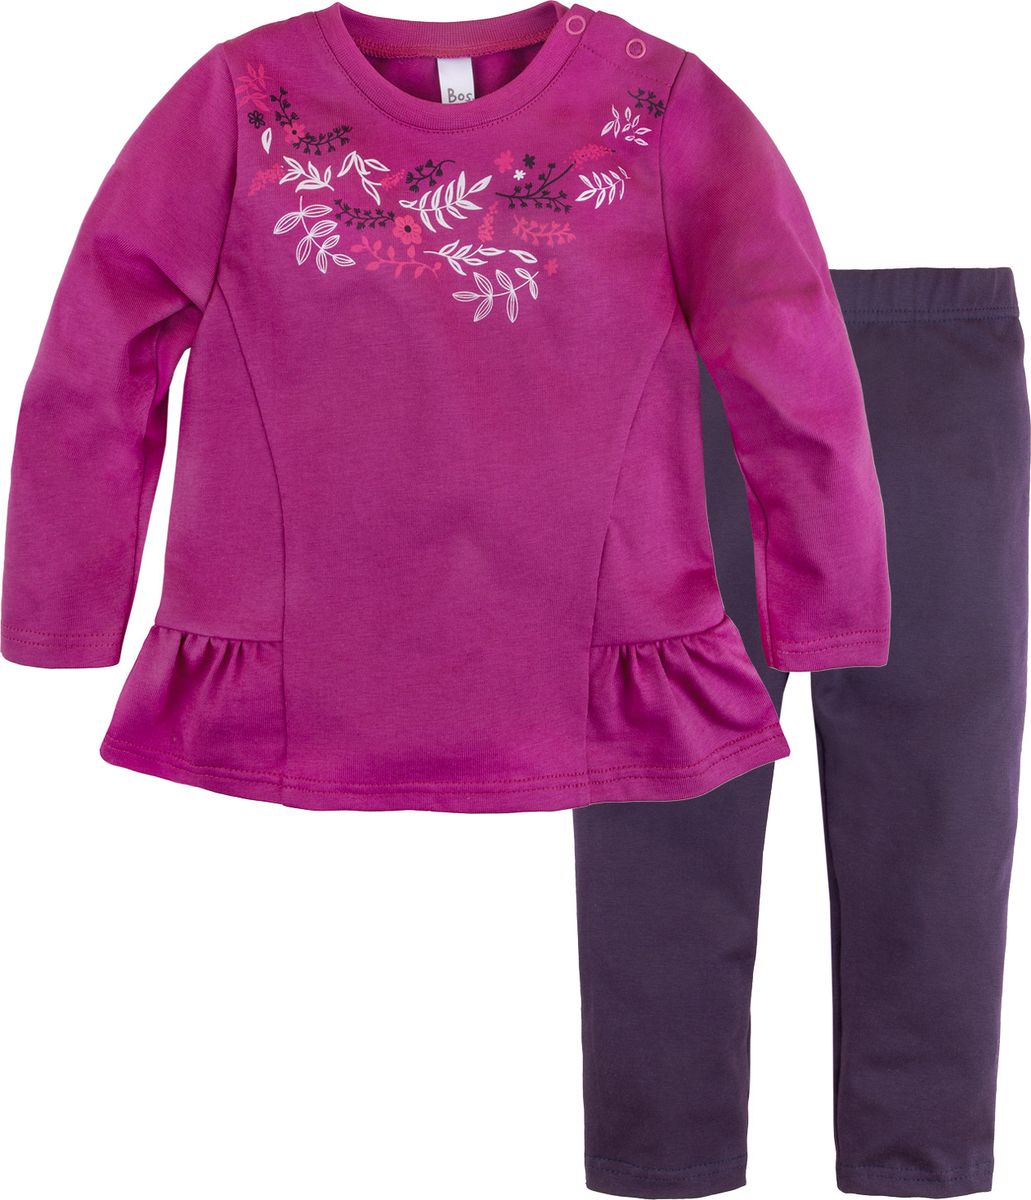 Комплект одежды для новорожденных Bossa Nova Клюква: туника и лосины, цвет: фуксия, черный. 084Б-161ф. Размер 86